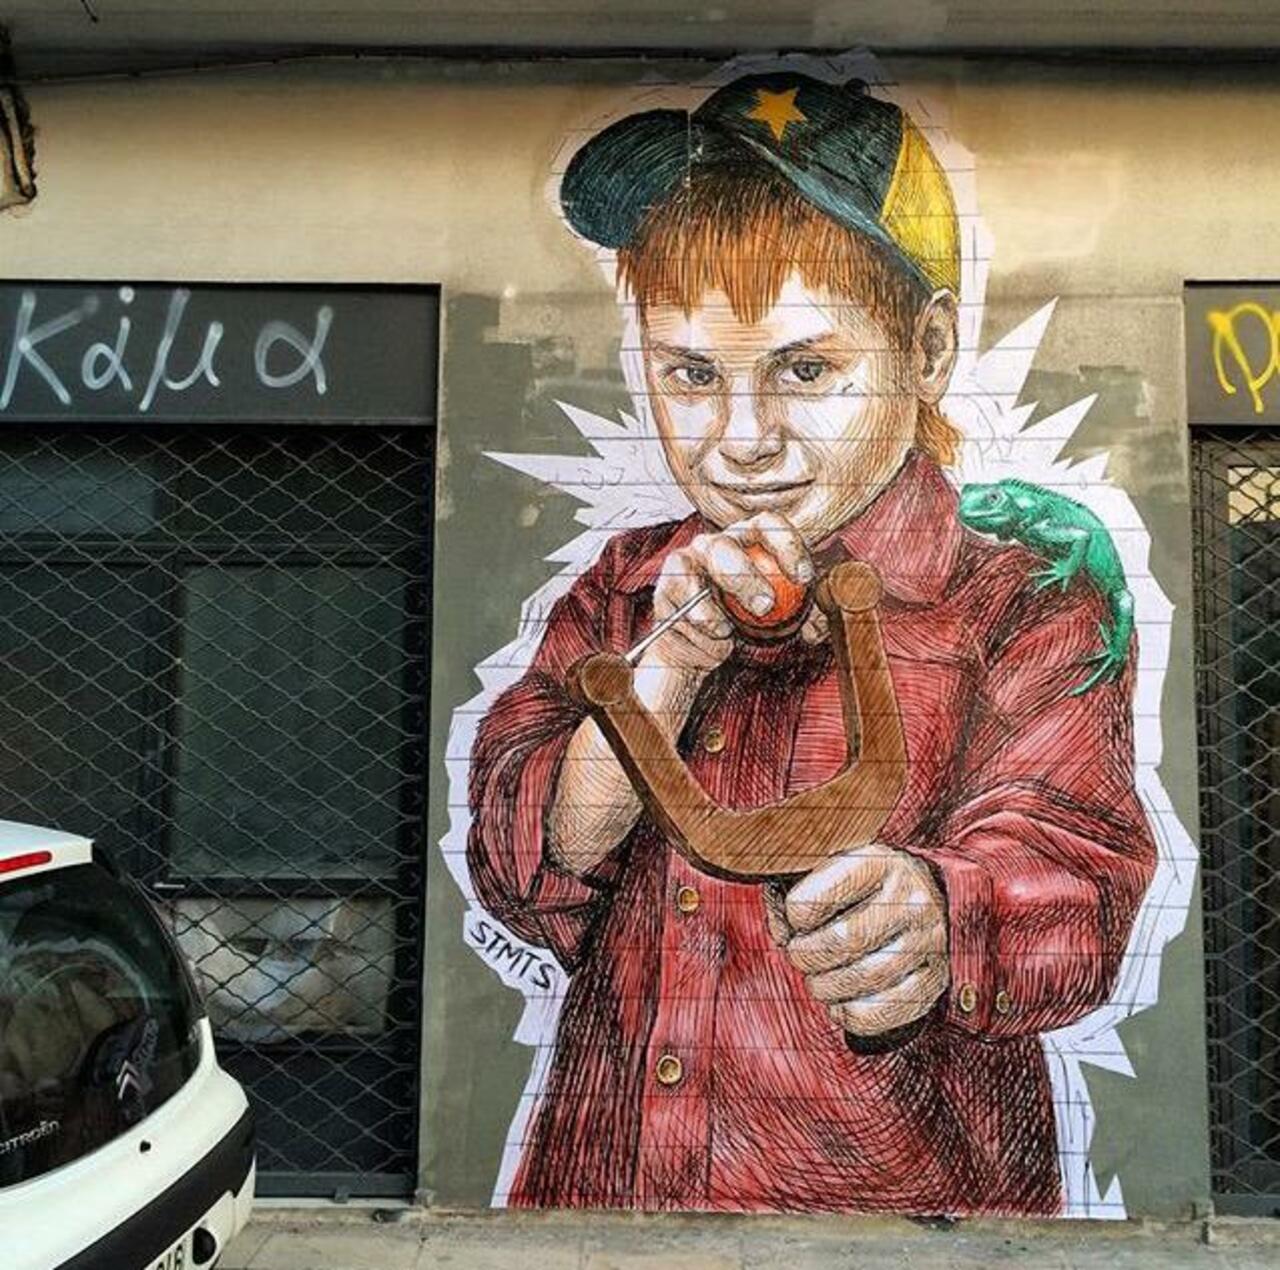 Street Art by STMTS in Athens

#art #graffiti #mural #streetart http://t.co/gGbsbRfCjJ